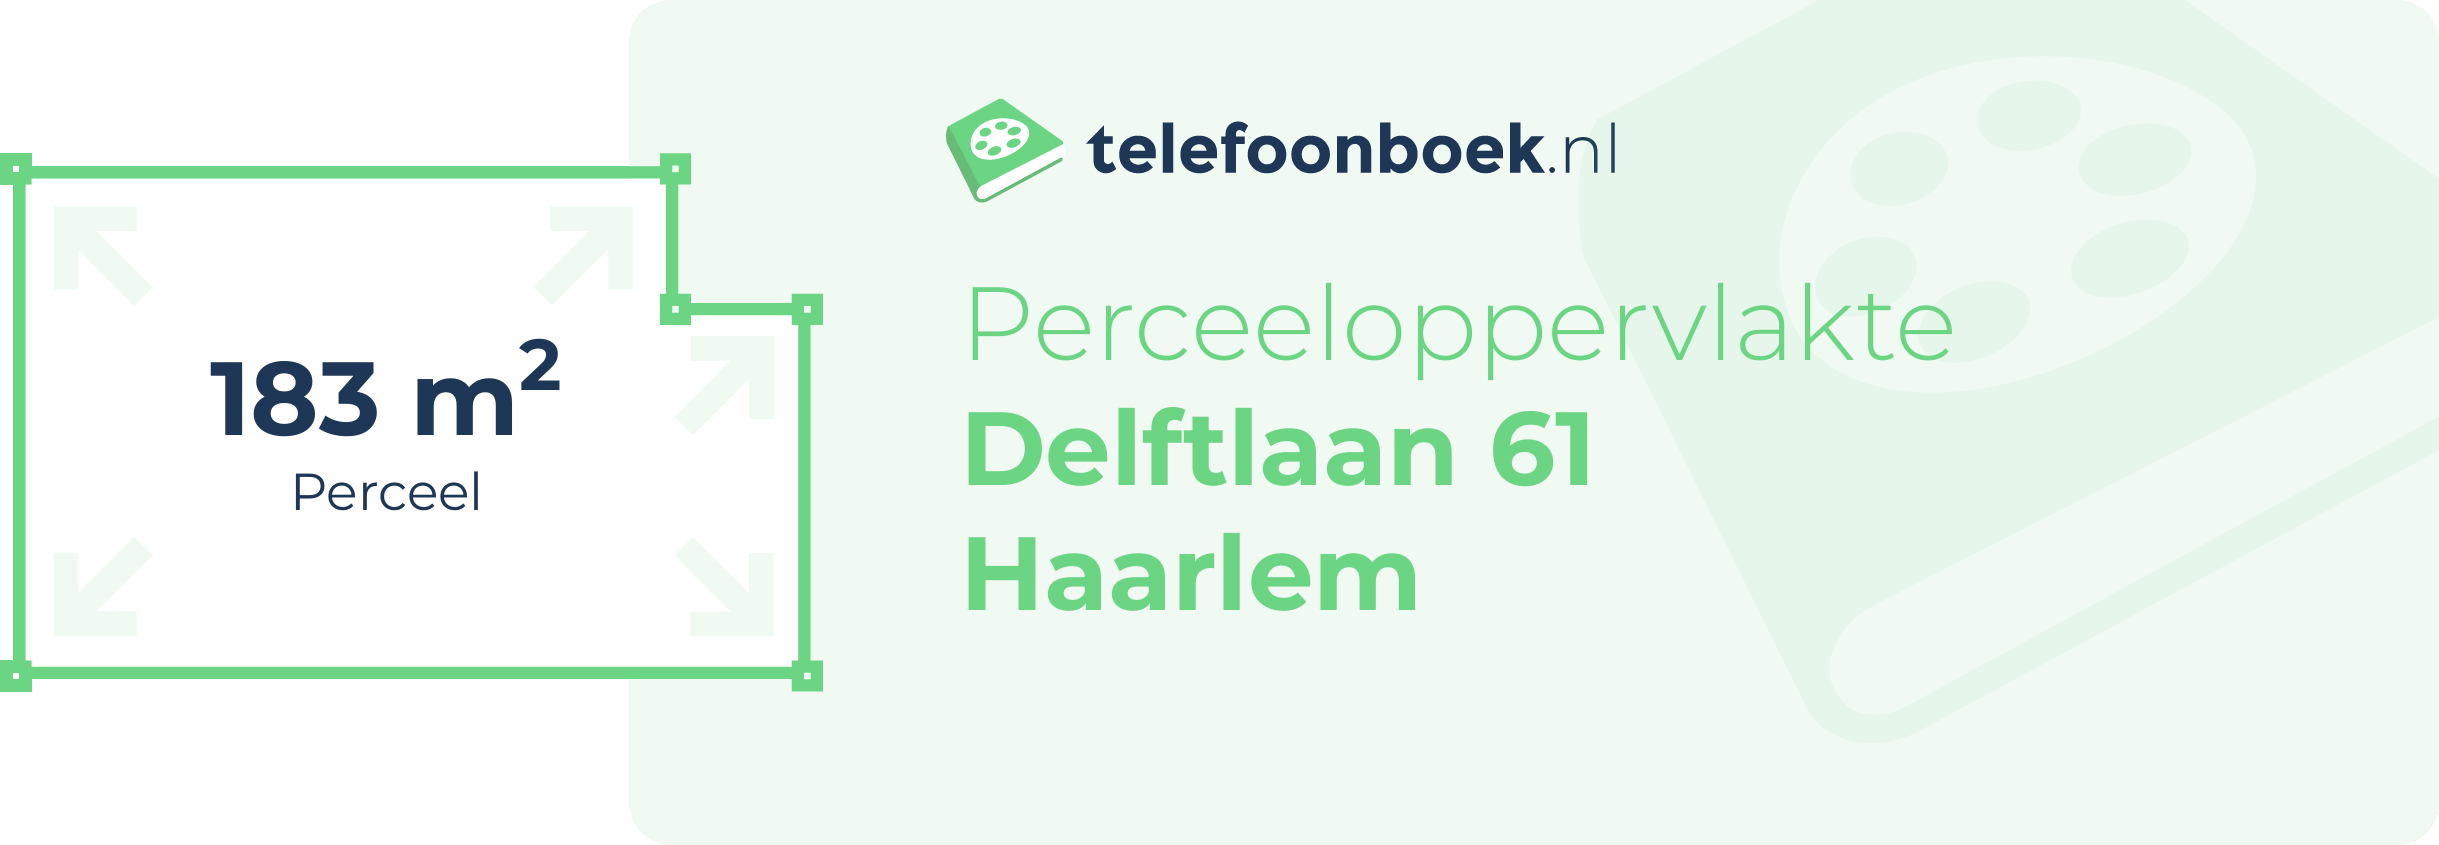 Perceeloppervlakte Delftlaan 61 Haarlem